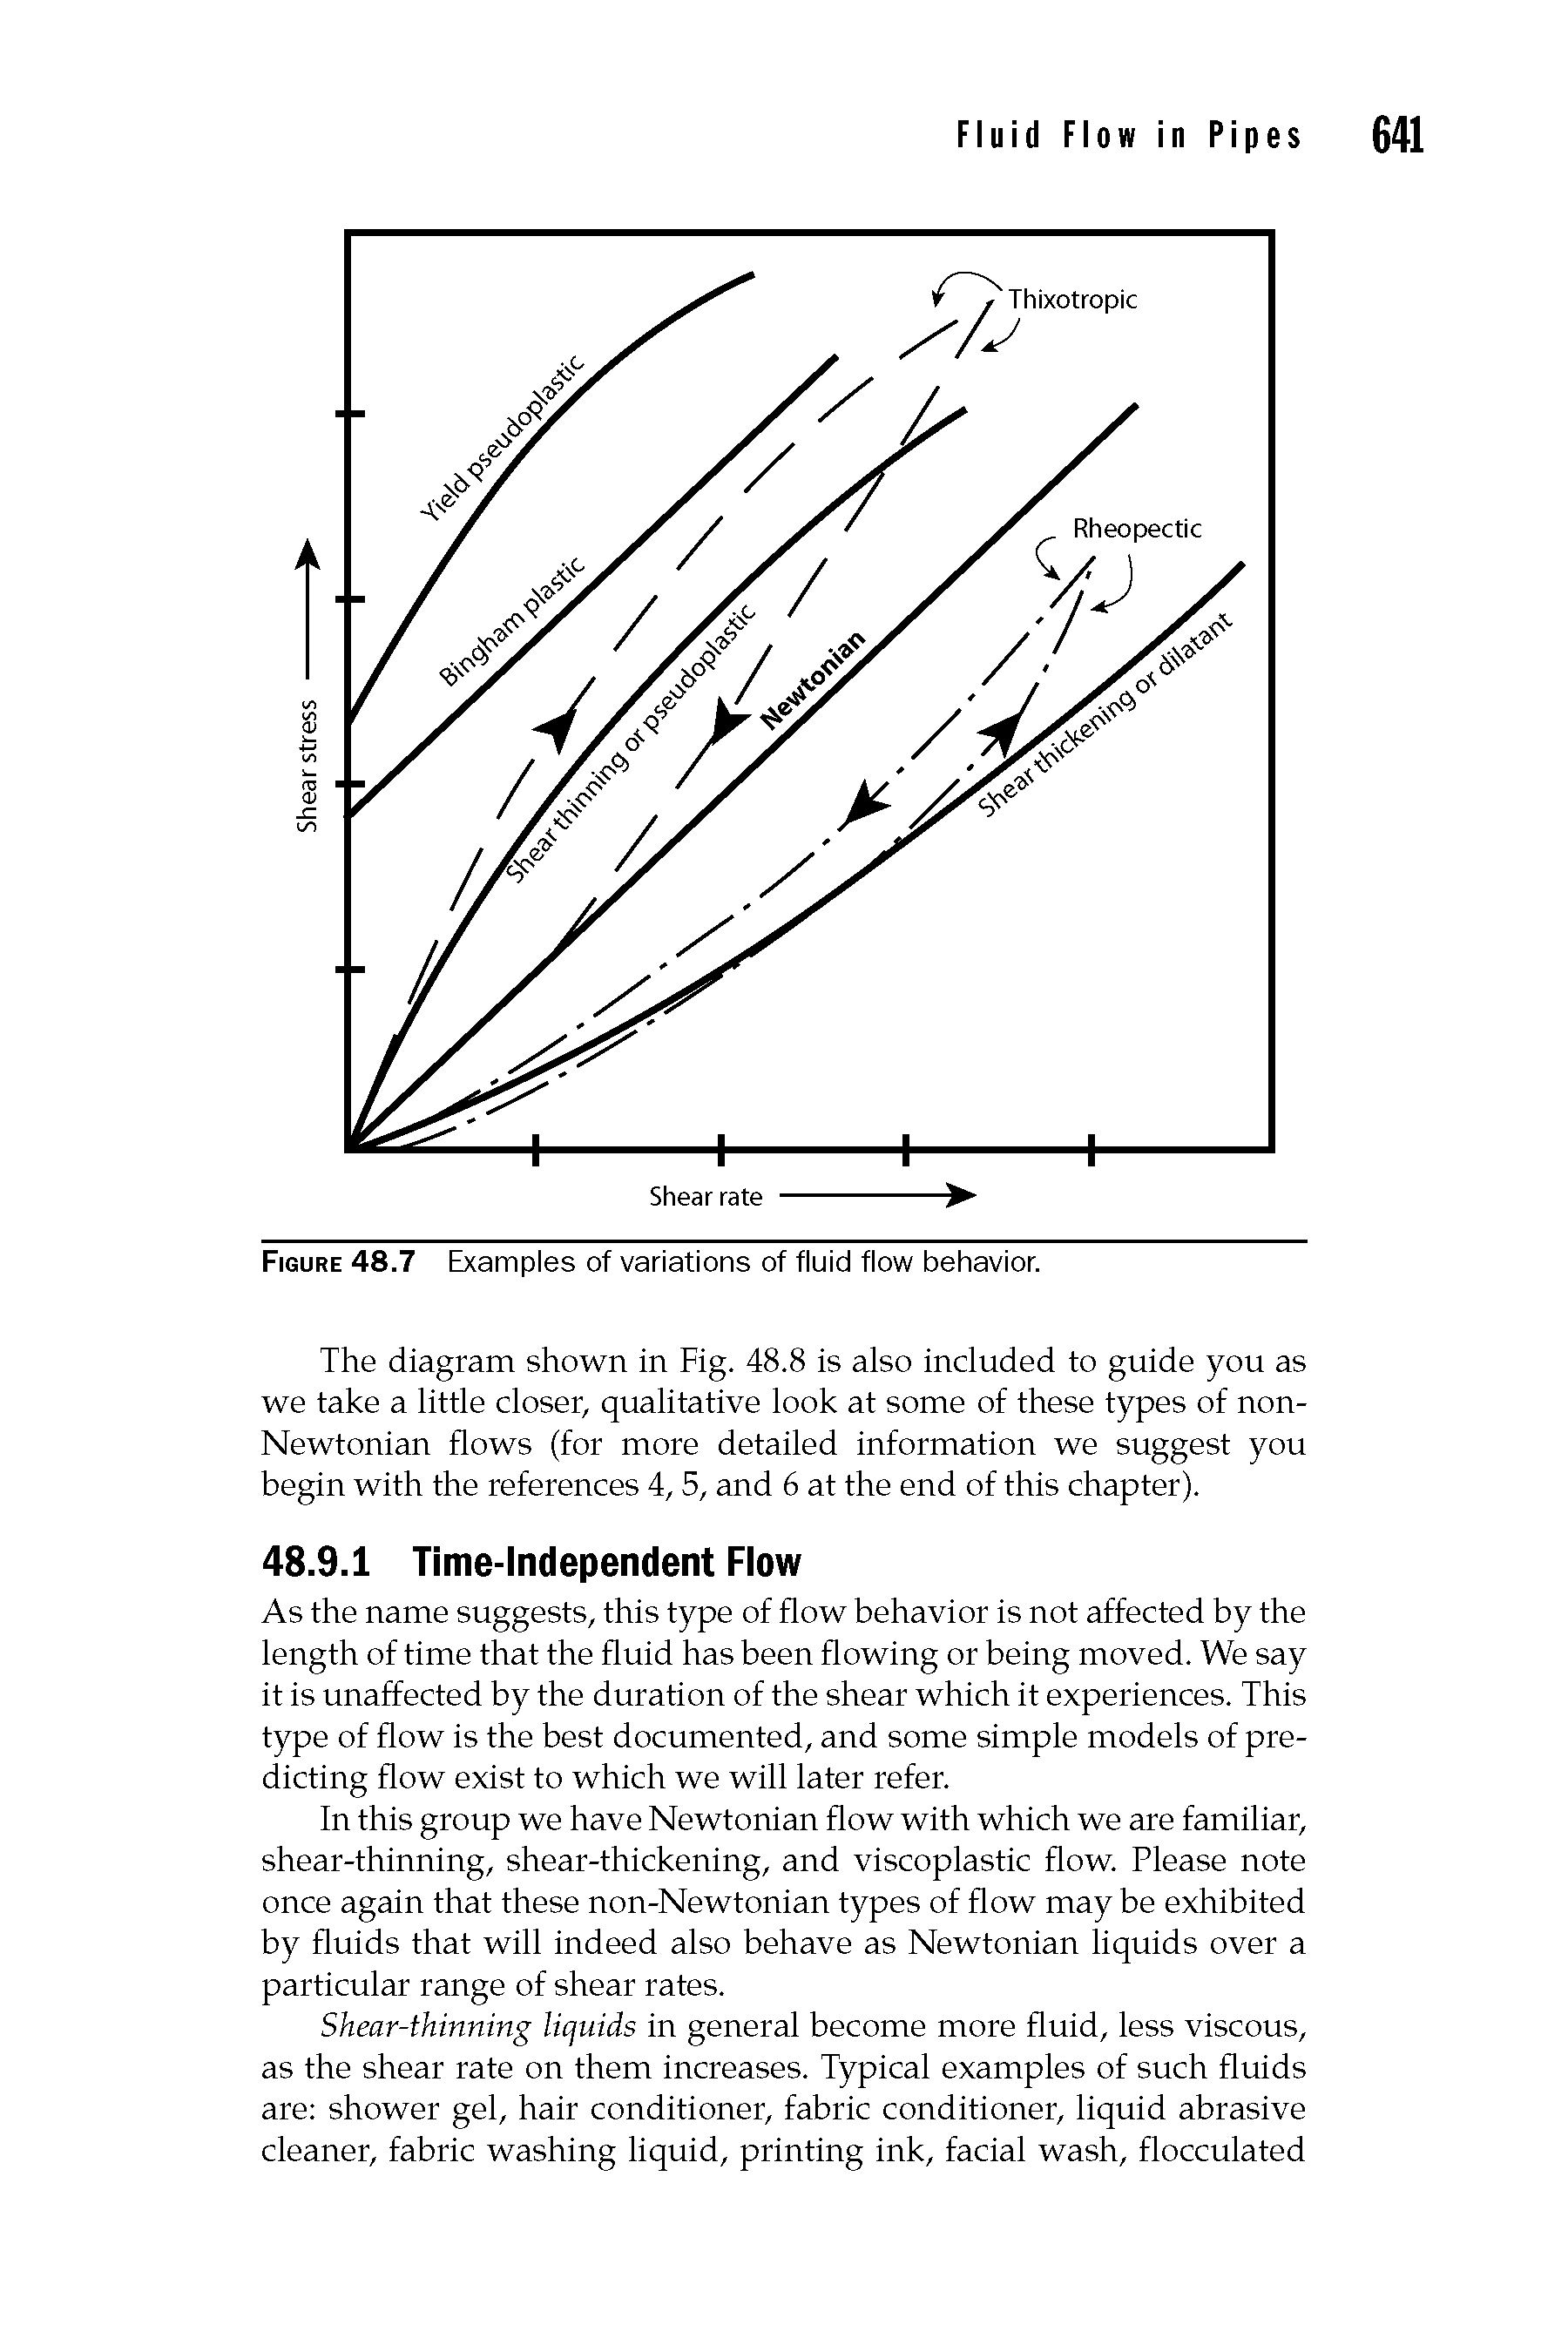 Figure 48.7 Examples of variations of fluid flow behavior.